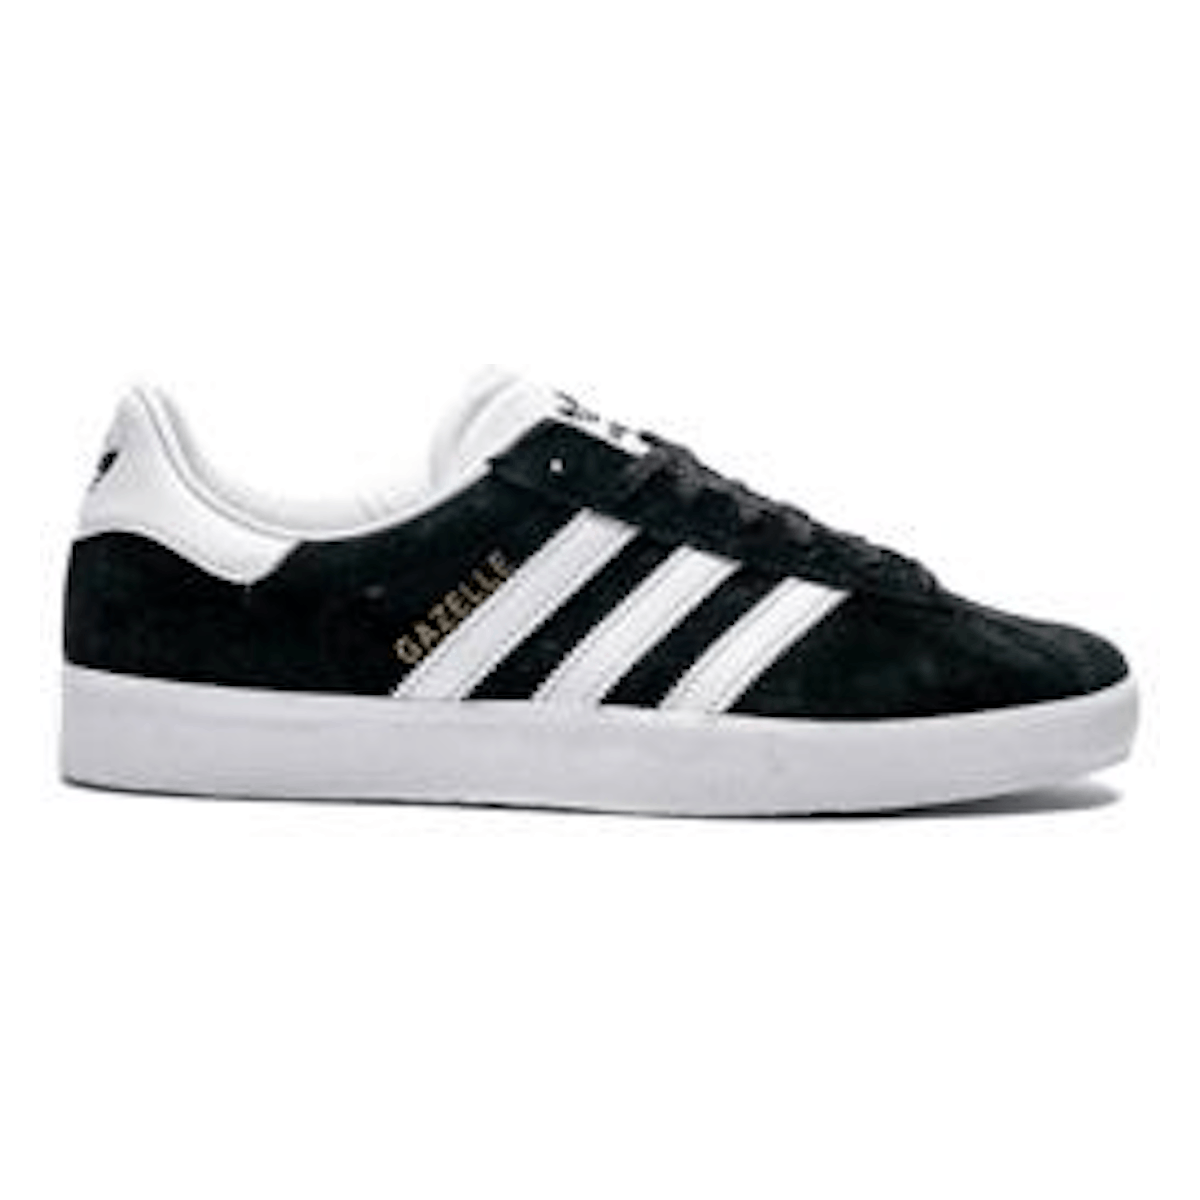 Adidas Gazelle 85 "Black & White"